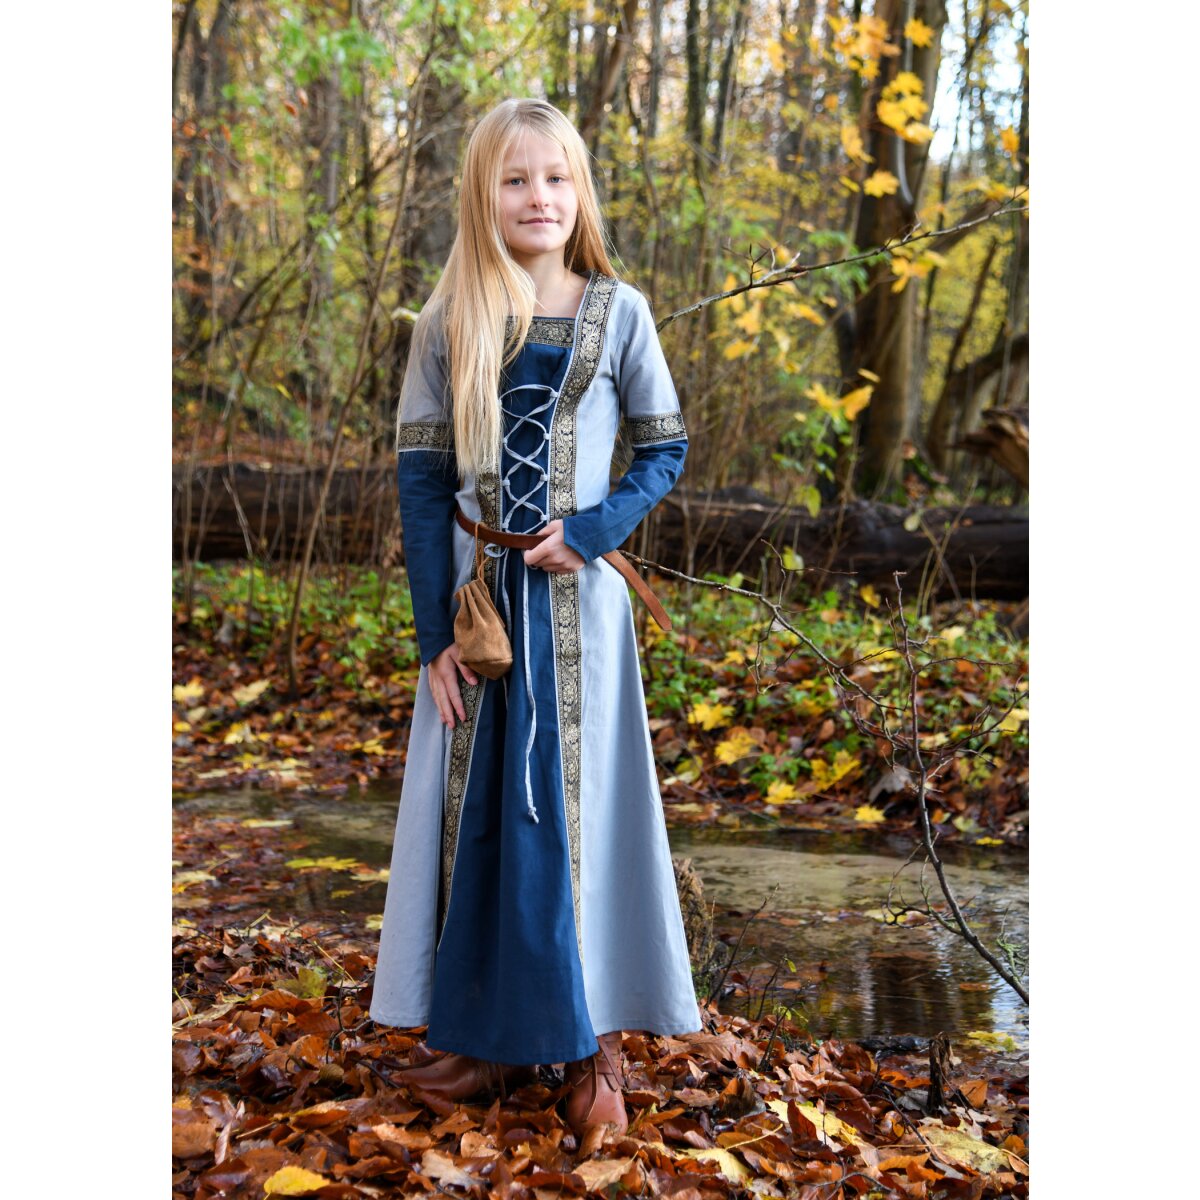 Kinder Fantasy-Mittelalterkleid blau, langarm...